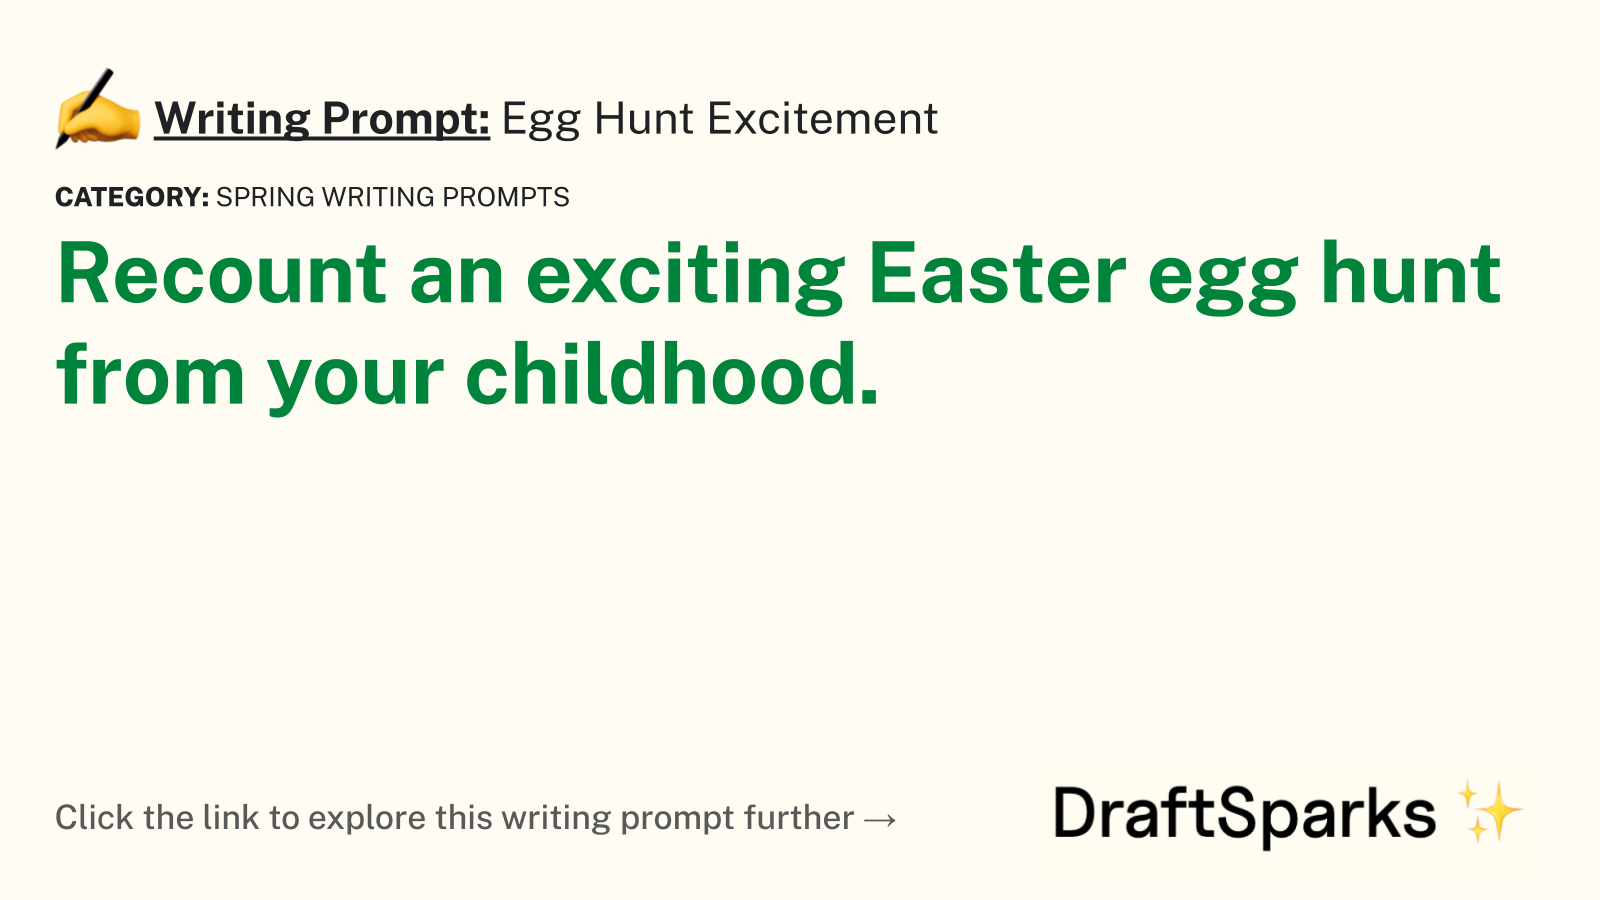 Egg Hunt Excitement